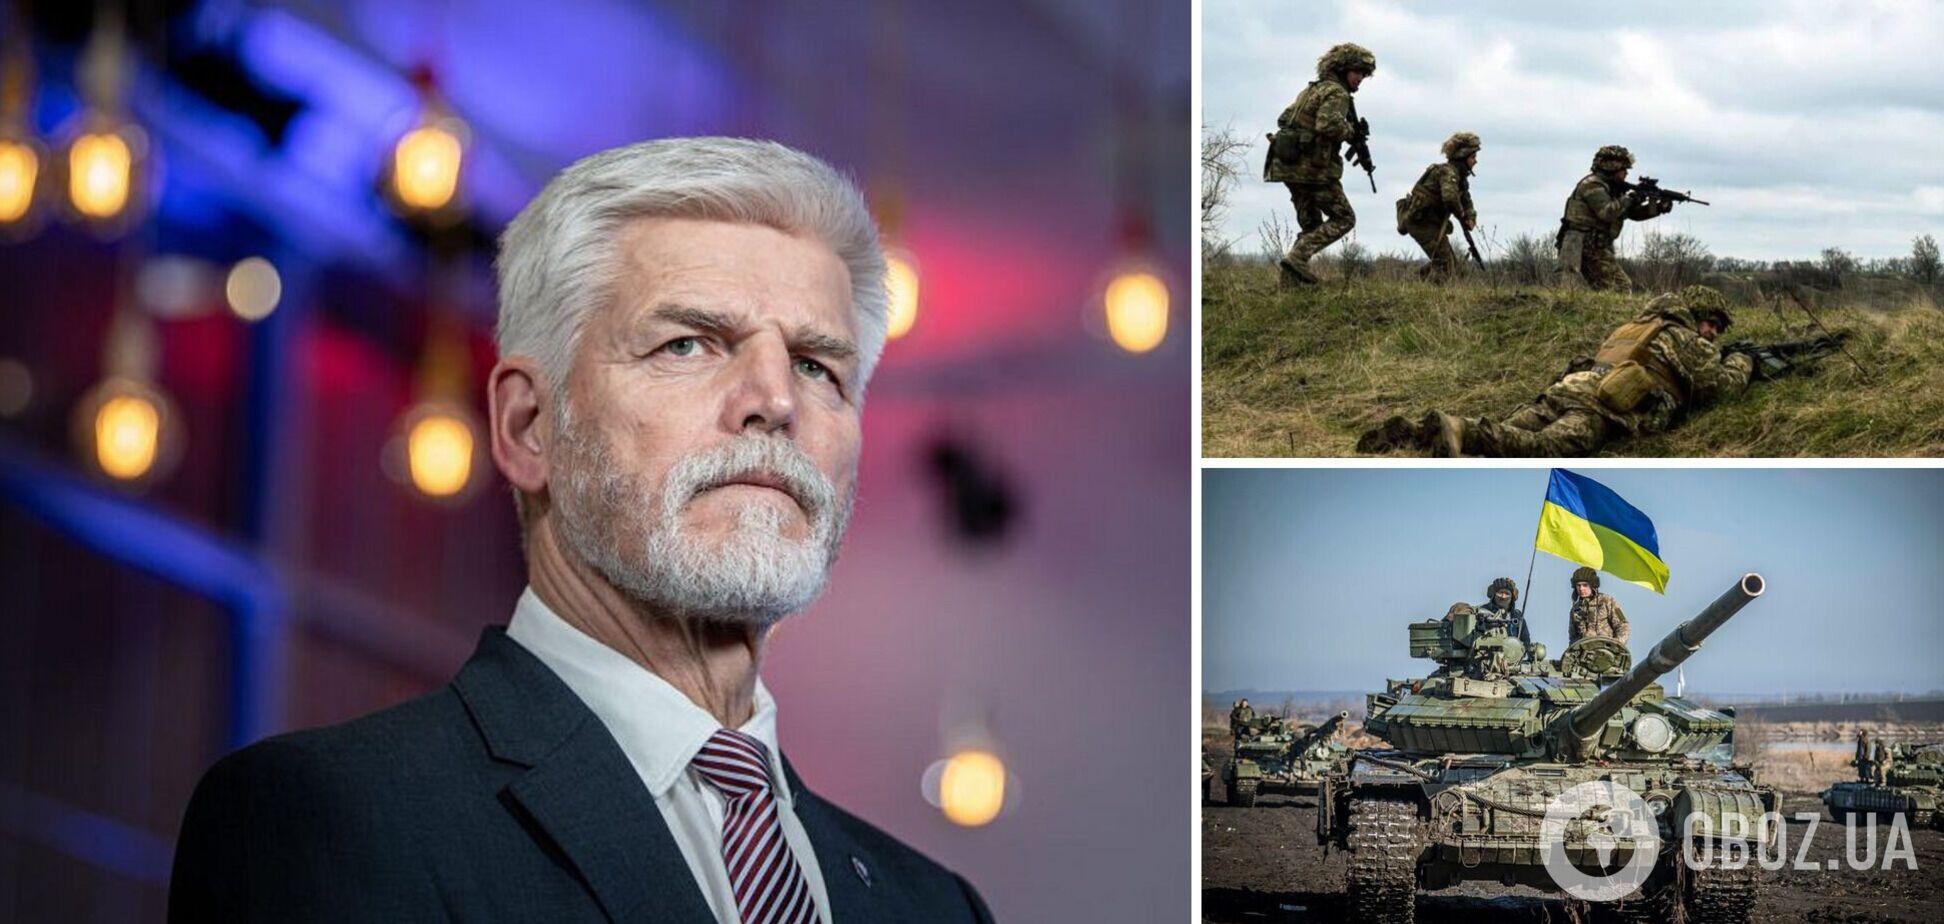 'Возникнет новая ситуация': президент Чехии спрогнозировал 'значительный сдвиг' в войне в Украине 